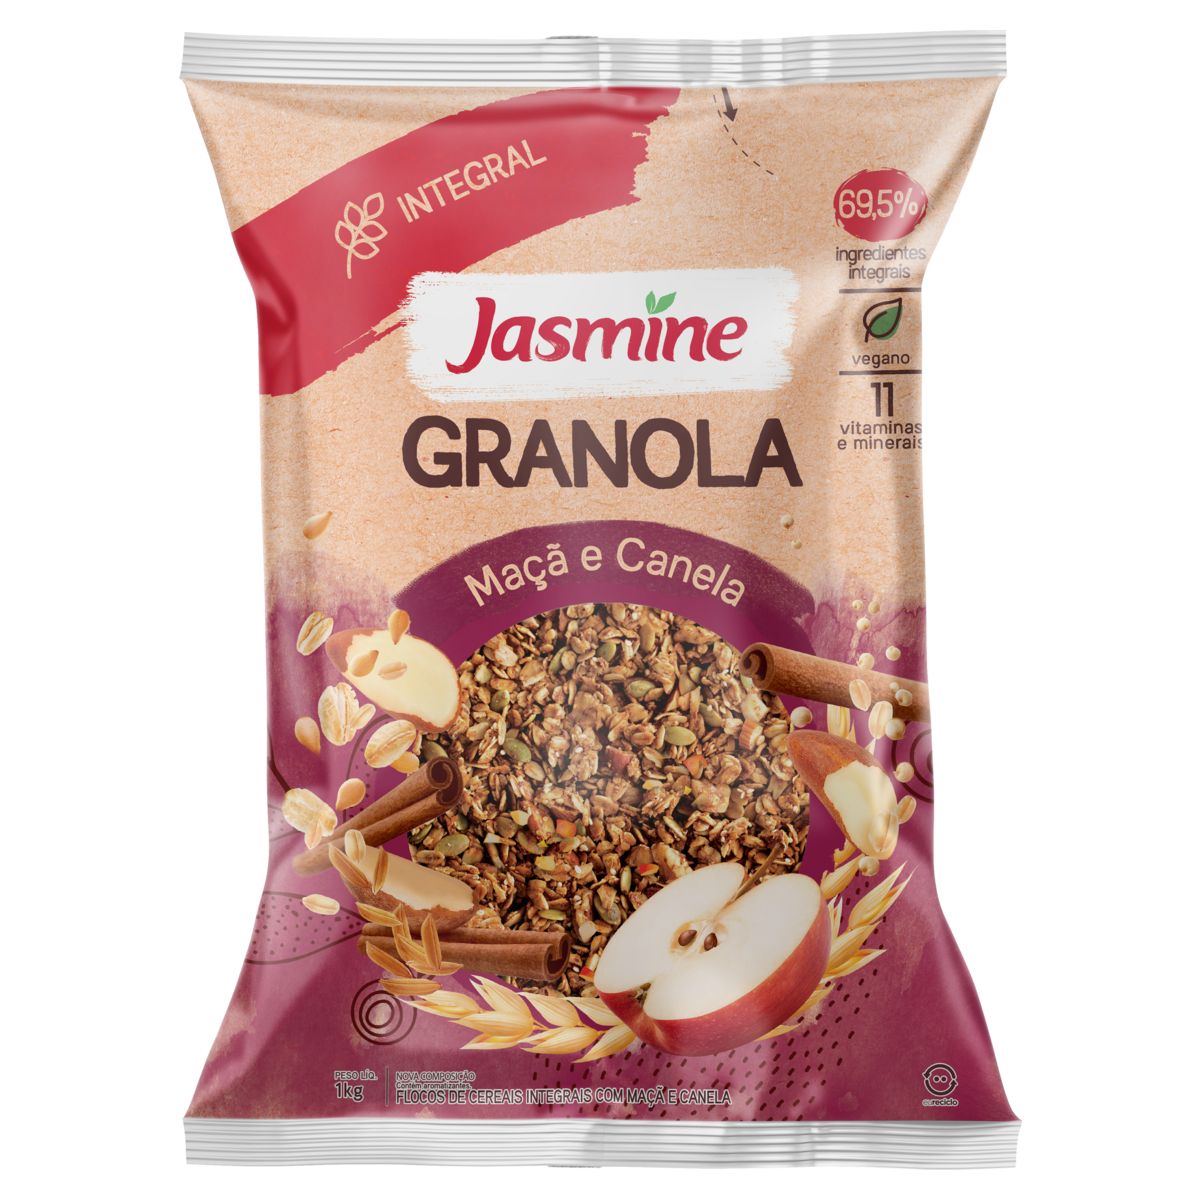 Granola Jasmine Maçã e Canela 69,5% Integral Pacote 1kg image number 0